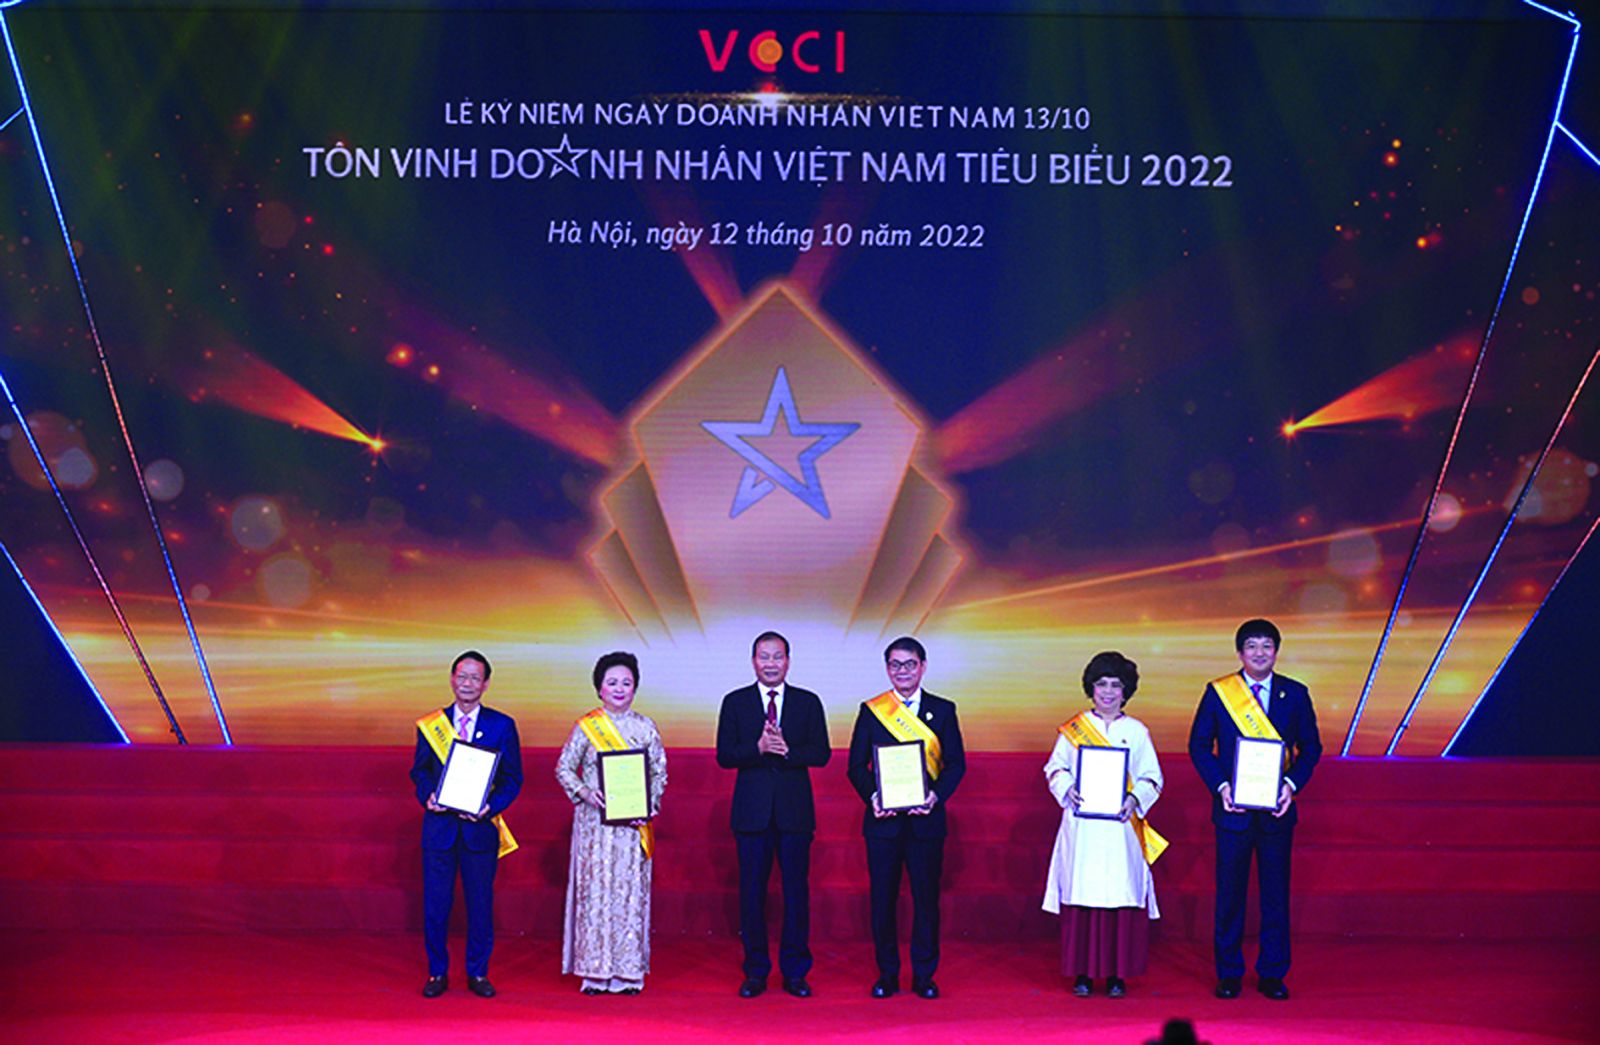 Ông Hoàng Quang Phòng, Phó chủ tịch Liên đoàn Thương Mại và Công nghiệp Việt Nam (VCCI) đã trao tặng danh hiệu tôn vinh 6 doanh nhân có thành tích xuất sắc trong công tác phòng chống dịch tại Việt Nam.